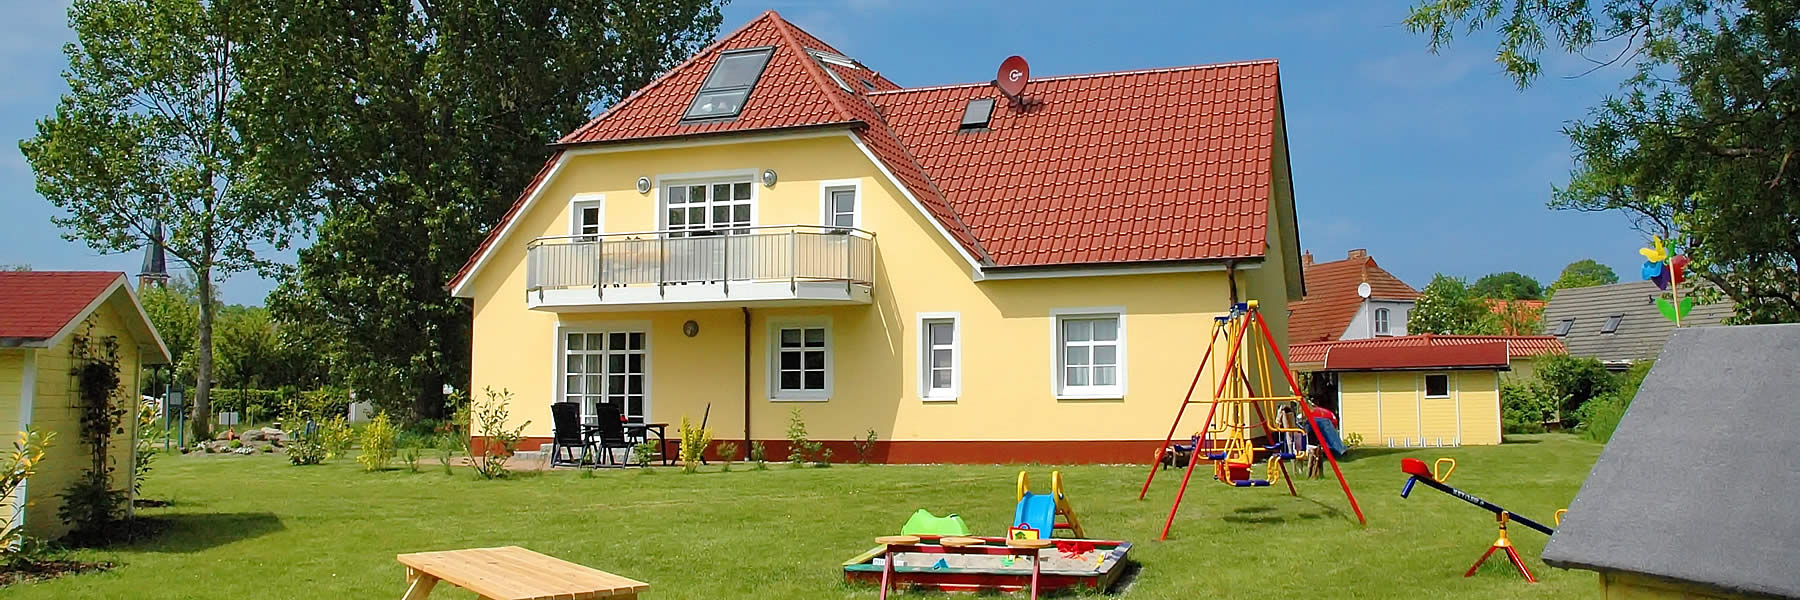 Haus Emily - Ferienwohnungen im Ostseebad Wustrow - Fischland Darß